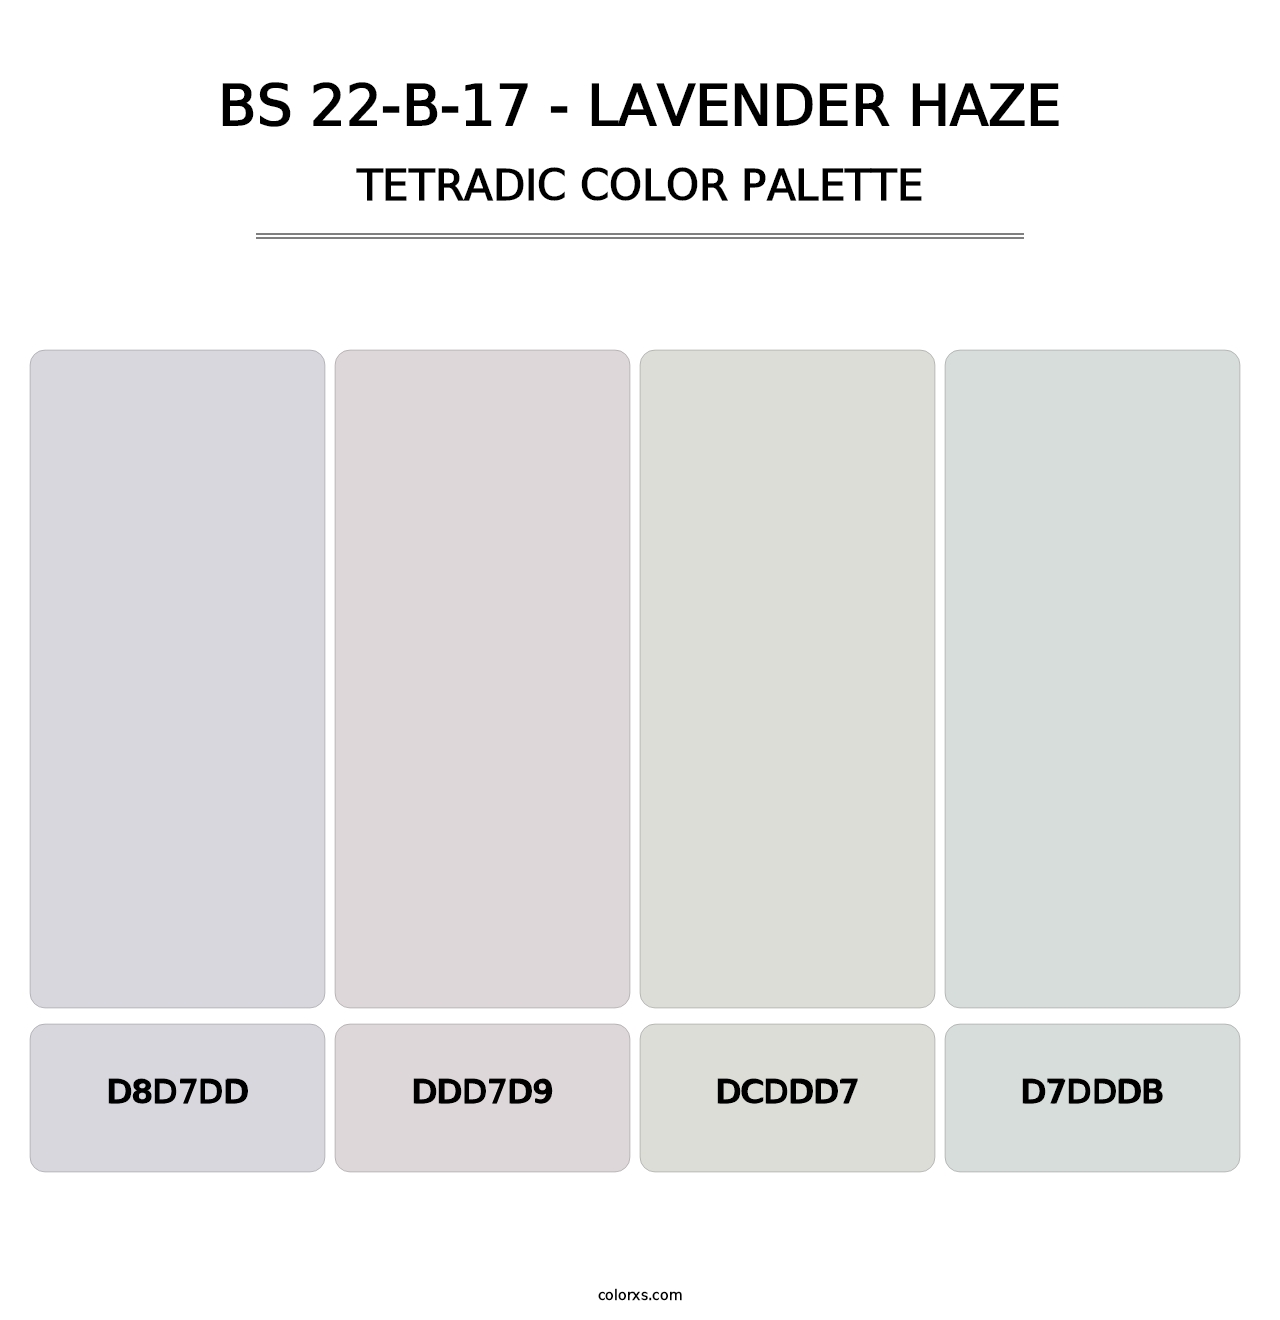 BS 22-B-17 - Lavender Haze - Tetradic Color Palette